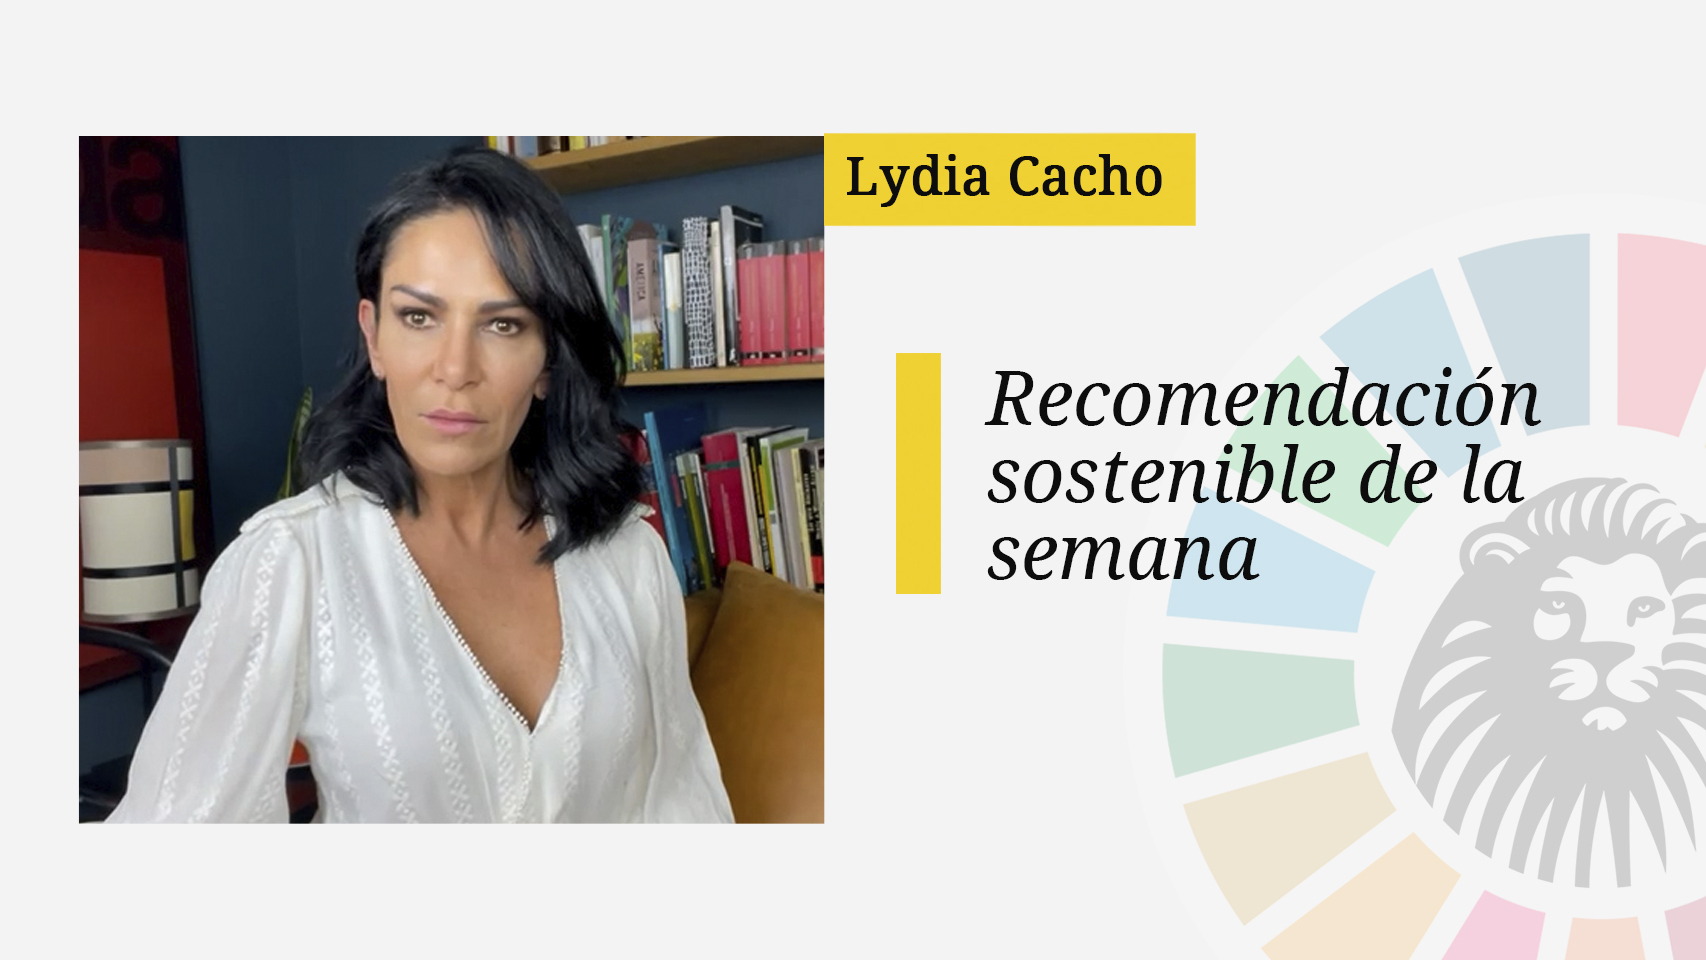 La recomendación sostenible de Lydia Cacho